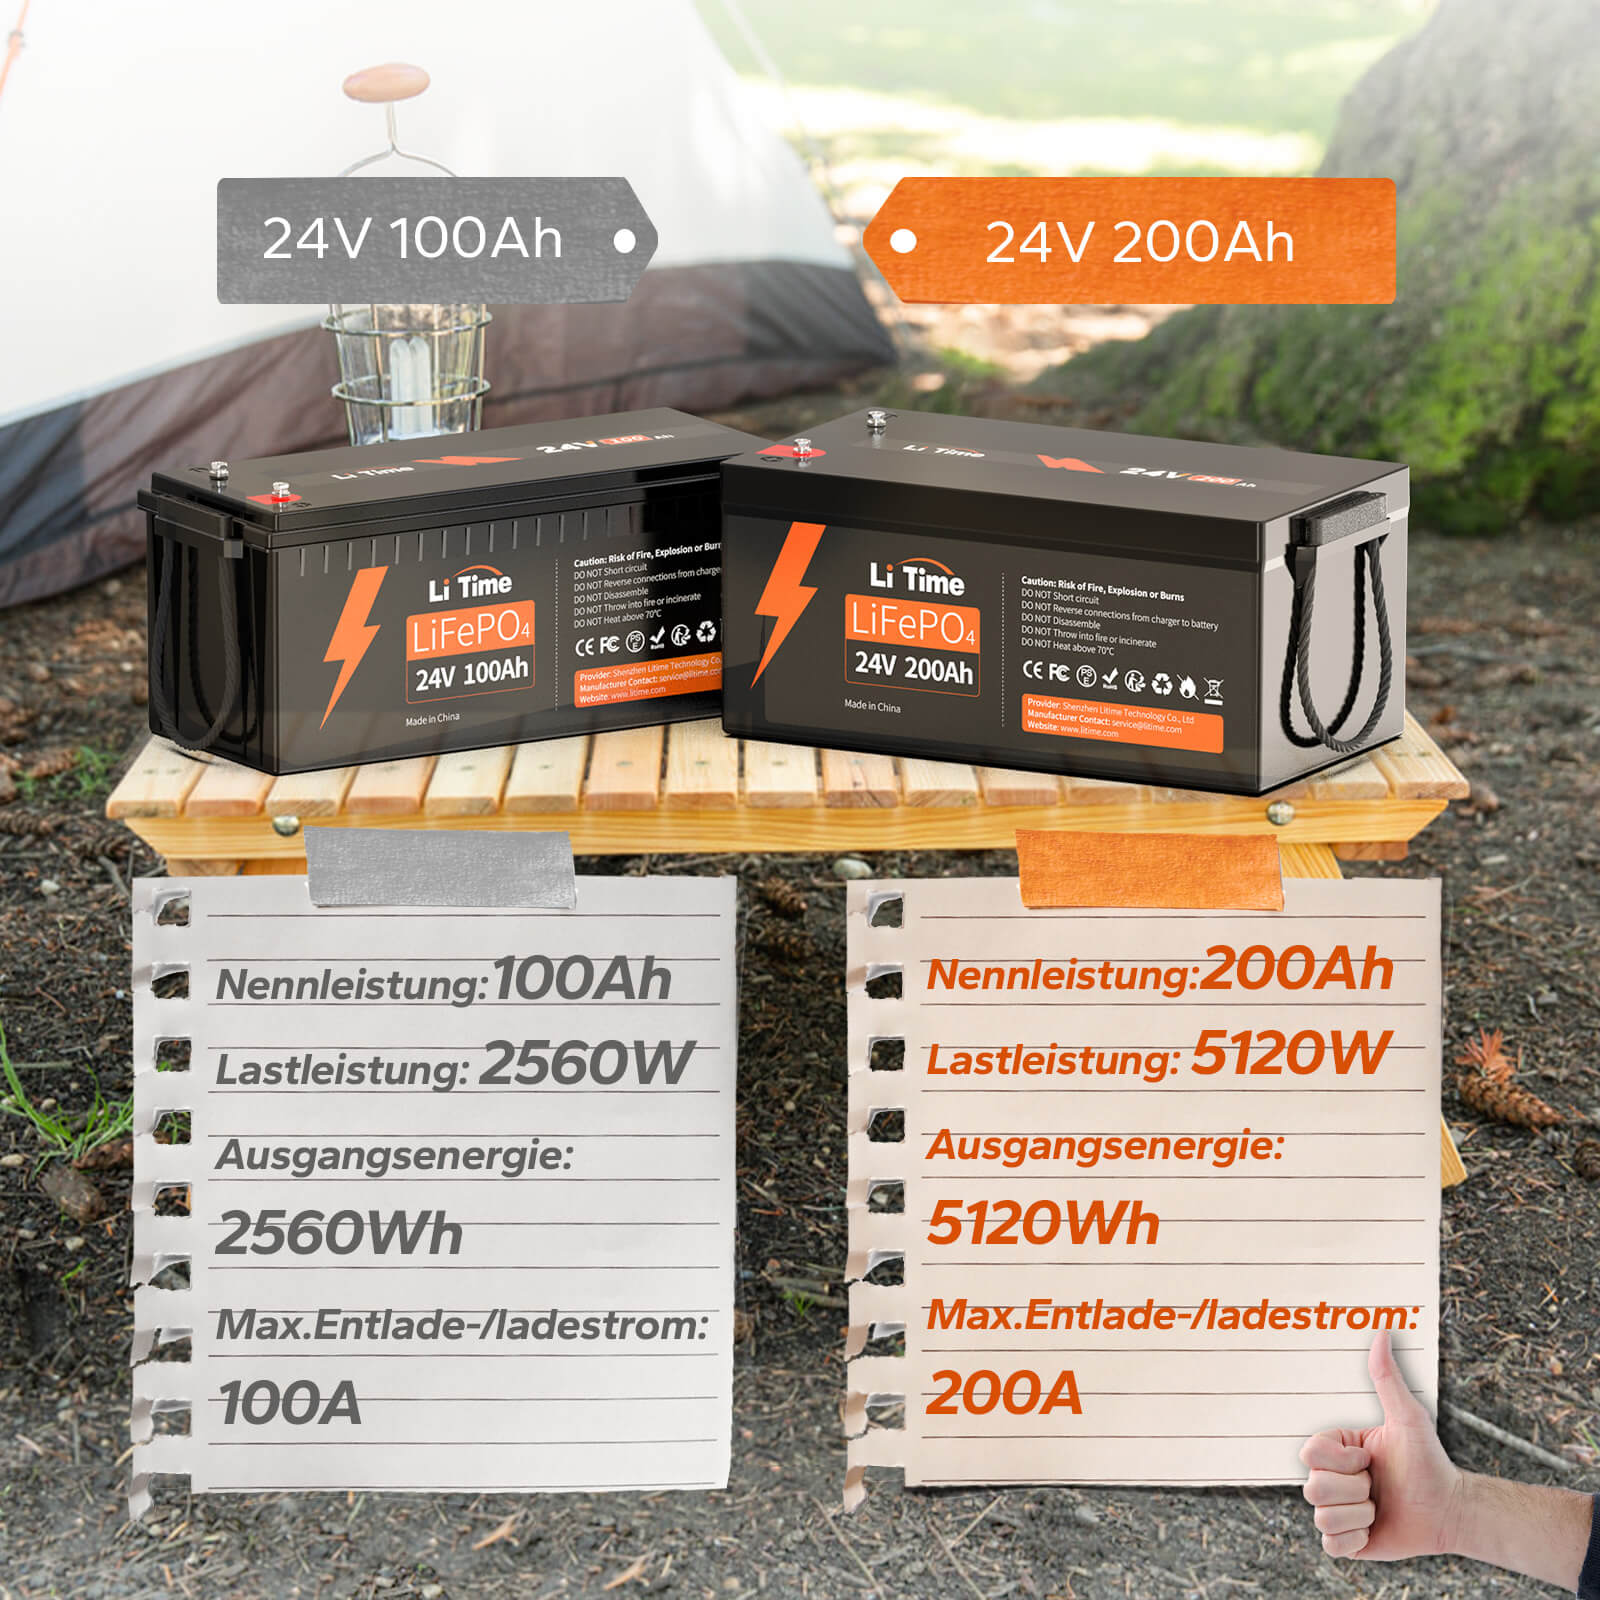 LiTime 24V 200Ah Lithium-Batterie kann 4000~15000 Zyklen laufen, was mehr als 10 Mal zu Blei-Säure mit 200~500 Zyklen ist. 24V LiFePO4 Batterie kann 100% SOC&amp;DOD realisieren und hat 10 Jahre Lebensdauer